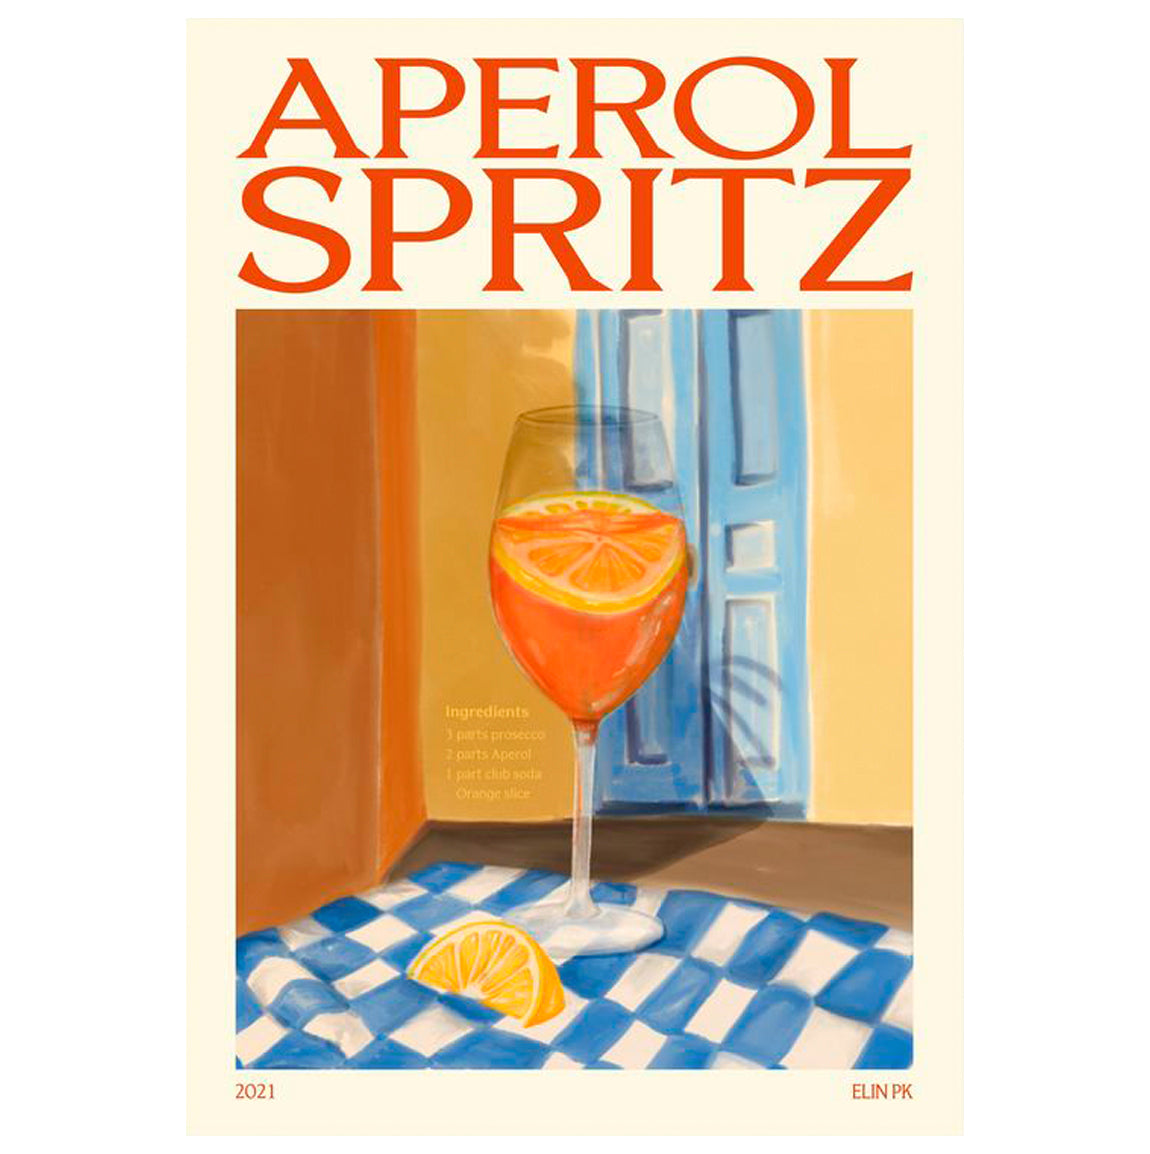 Aperol Spritz Print - By Elin PK